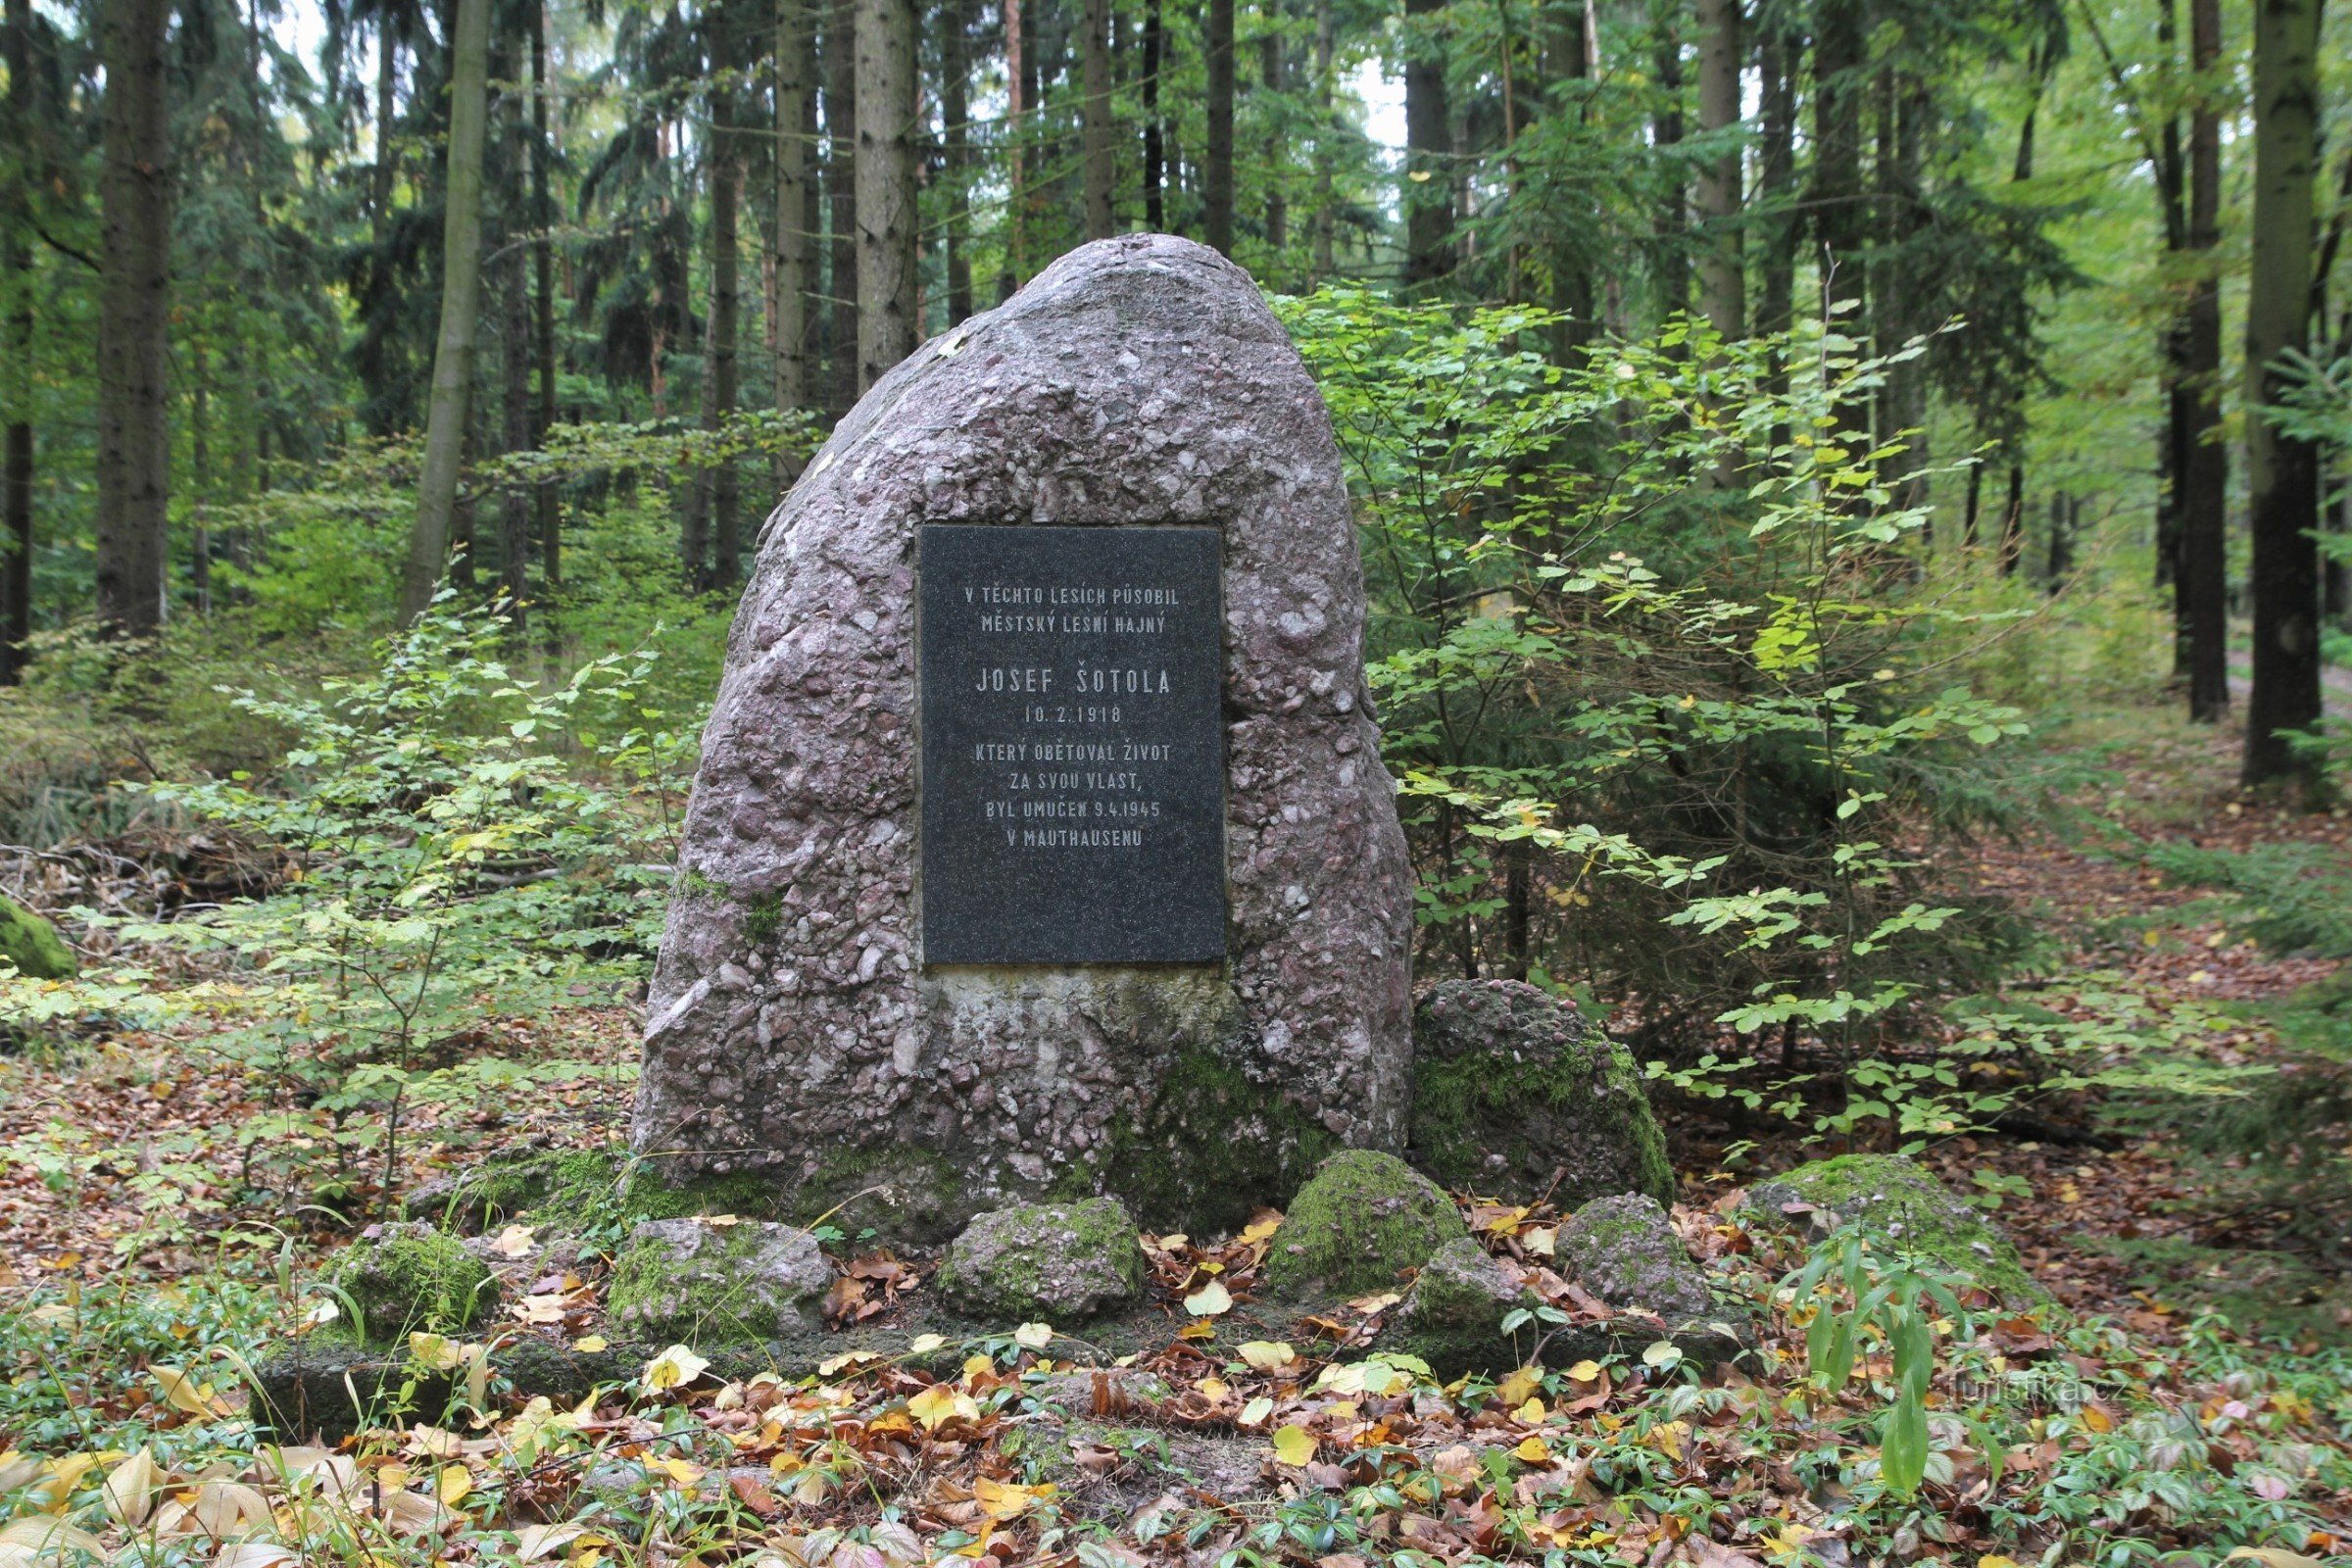 Pomnik Josefa Šotola .a